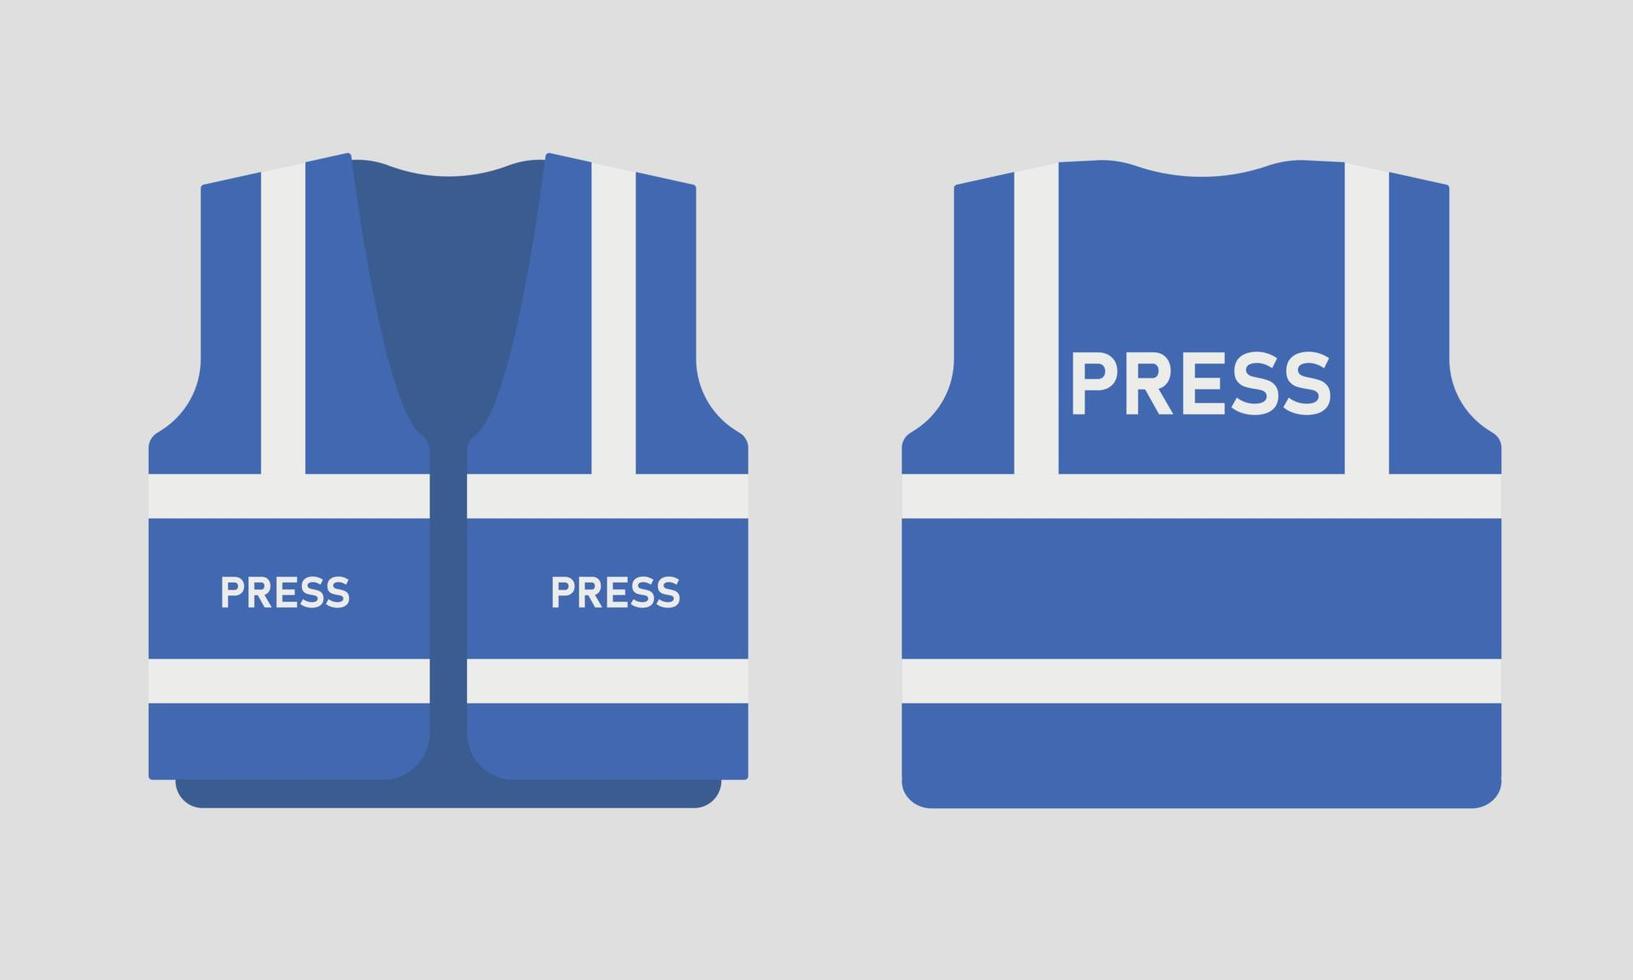 Safety press vest templates set. Work blue uniform for correspondents. Vector illustration on grey background